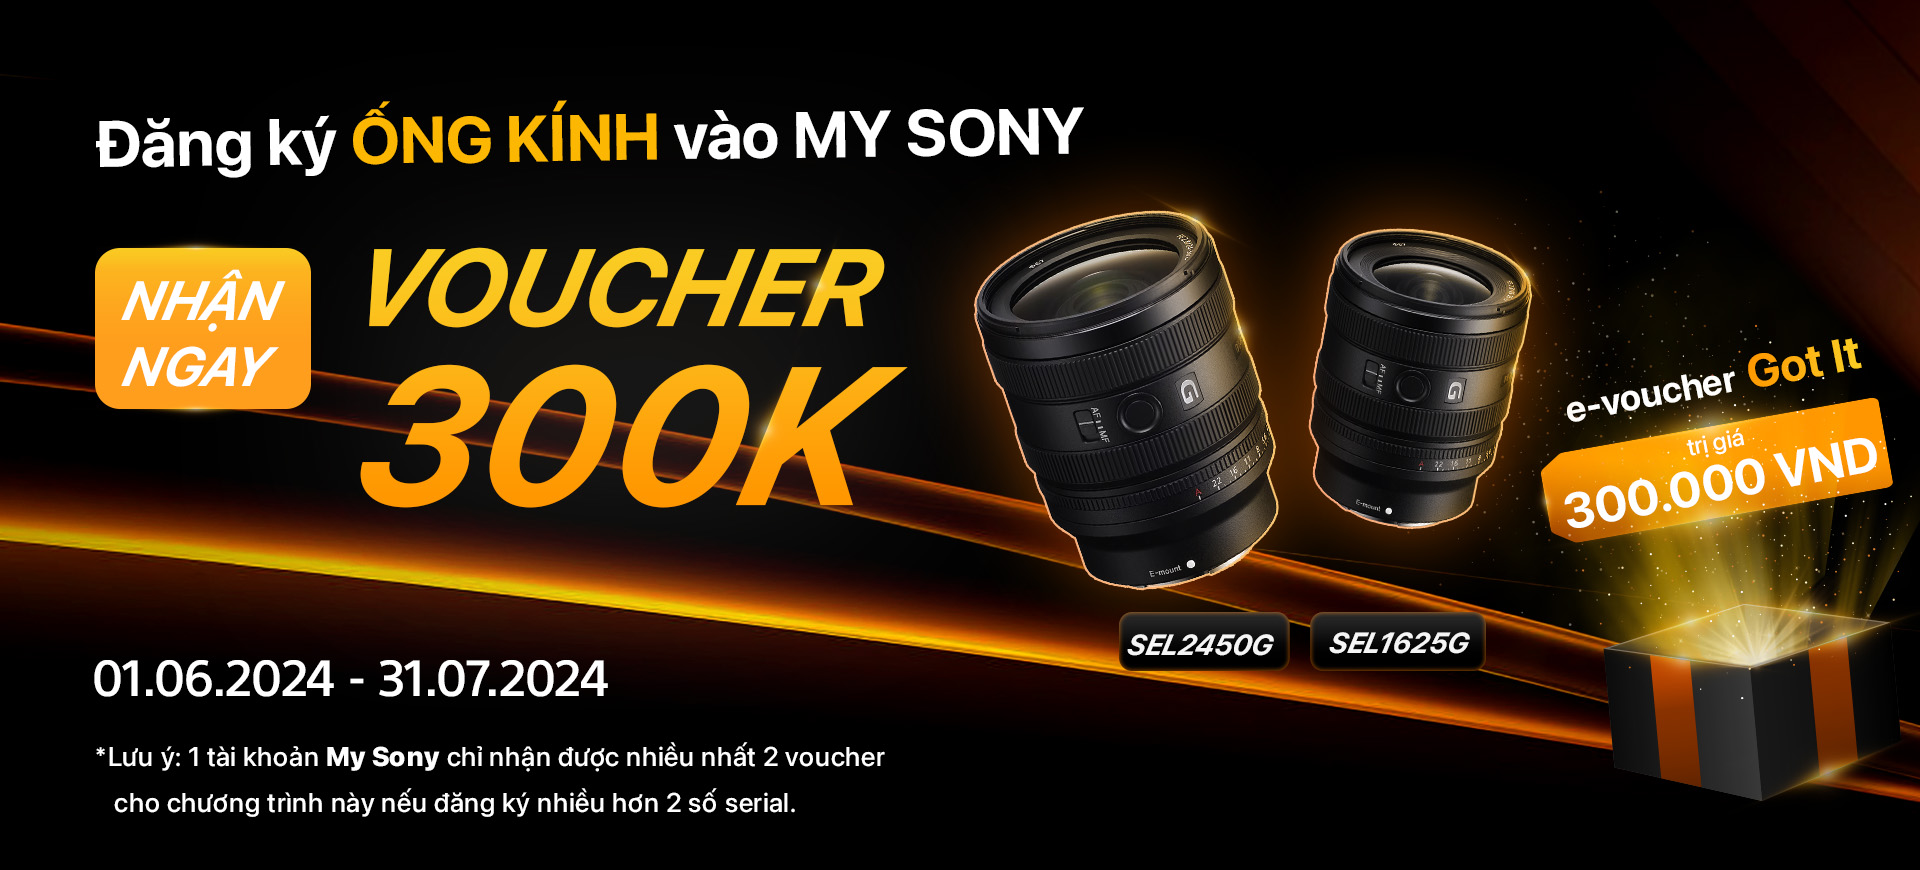 Tặng e-voucher Got It khi mua ống kính SEL2450G / SEL1625G và đăng ký My Sony